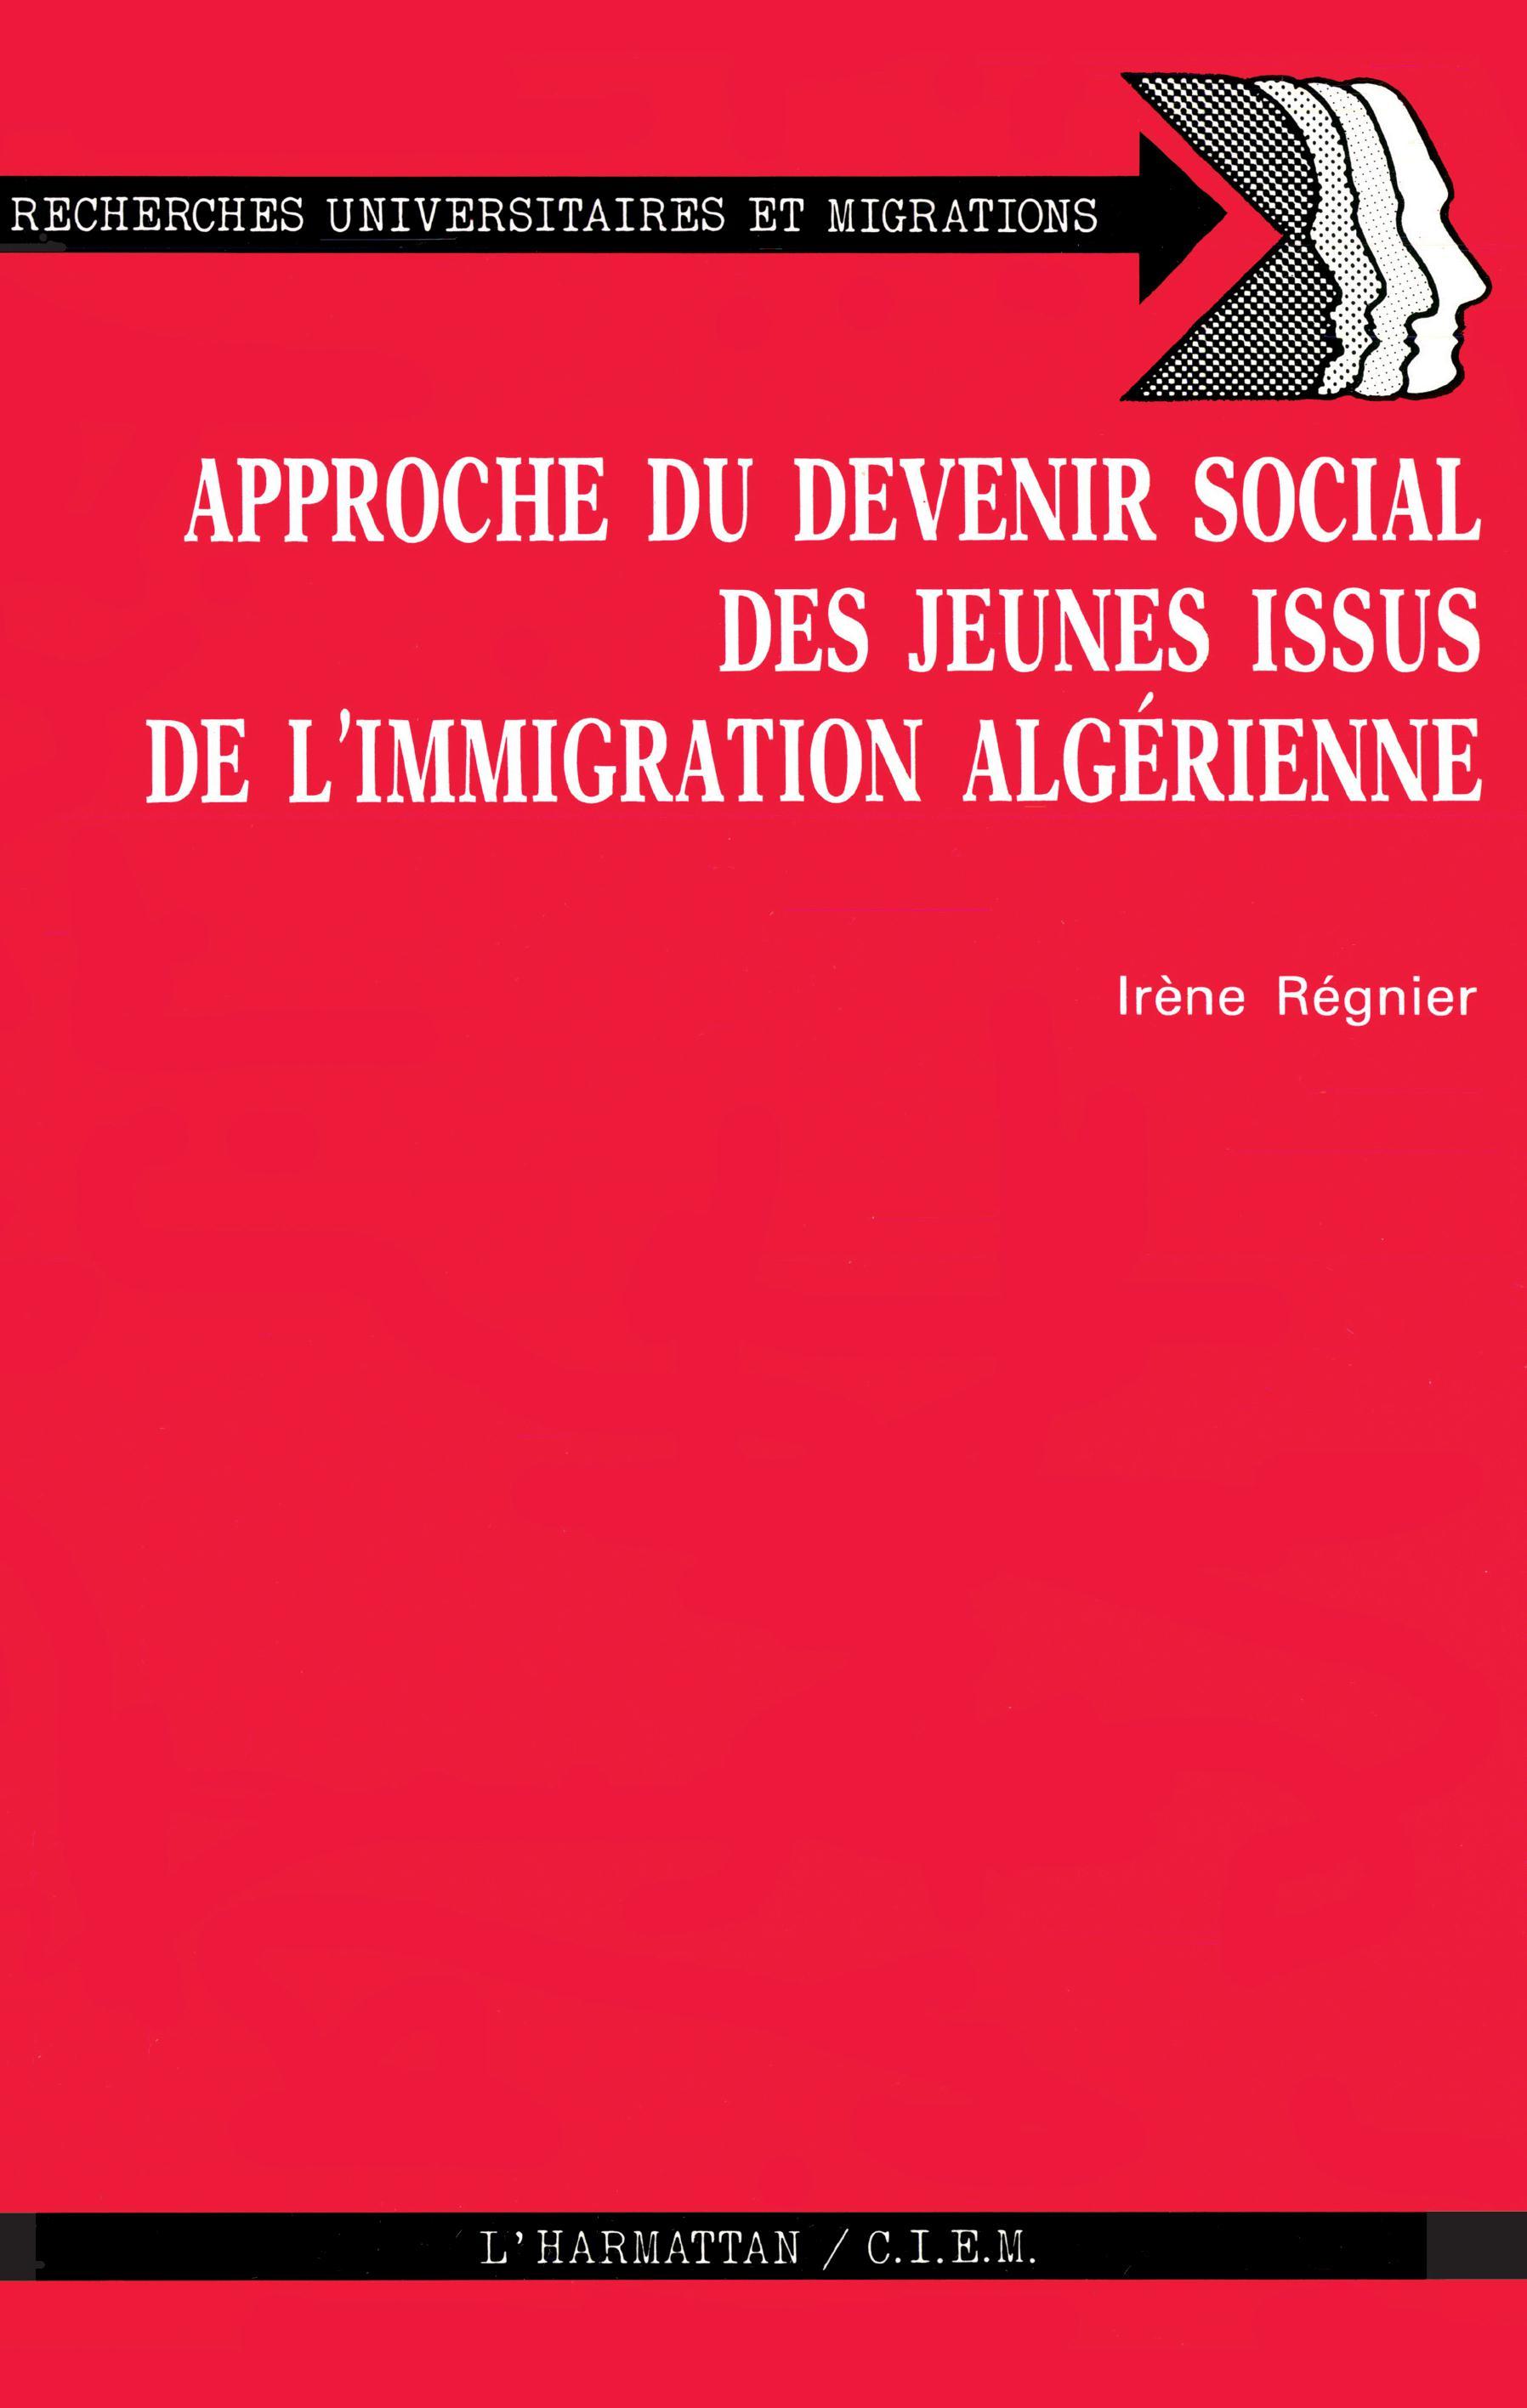 Approche du devenir social des jeunes issus de l'immigration algérinne (9782858026593-front-cover)